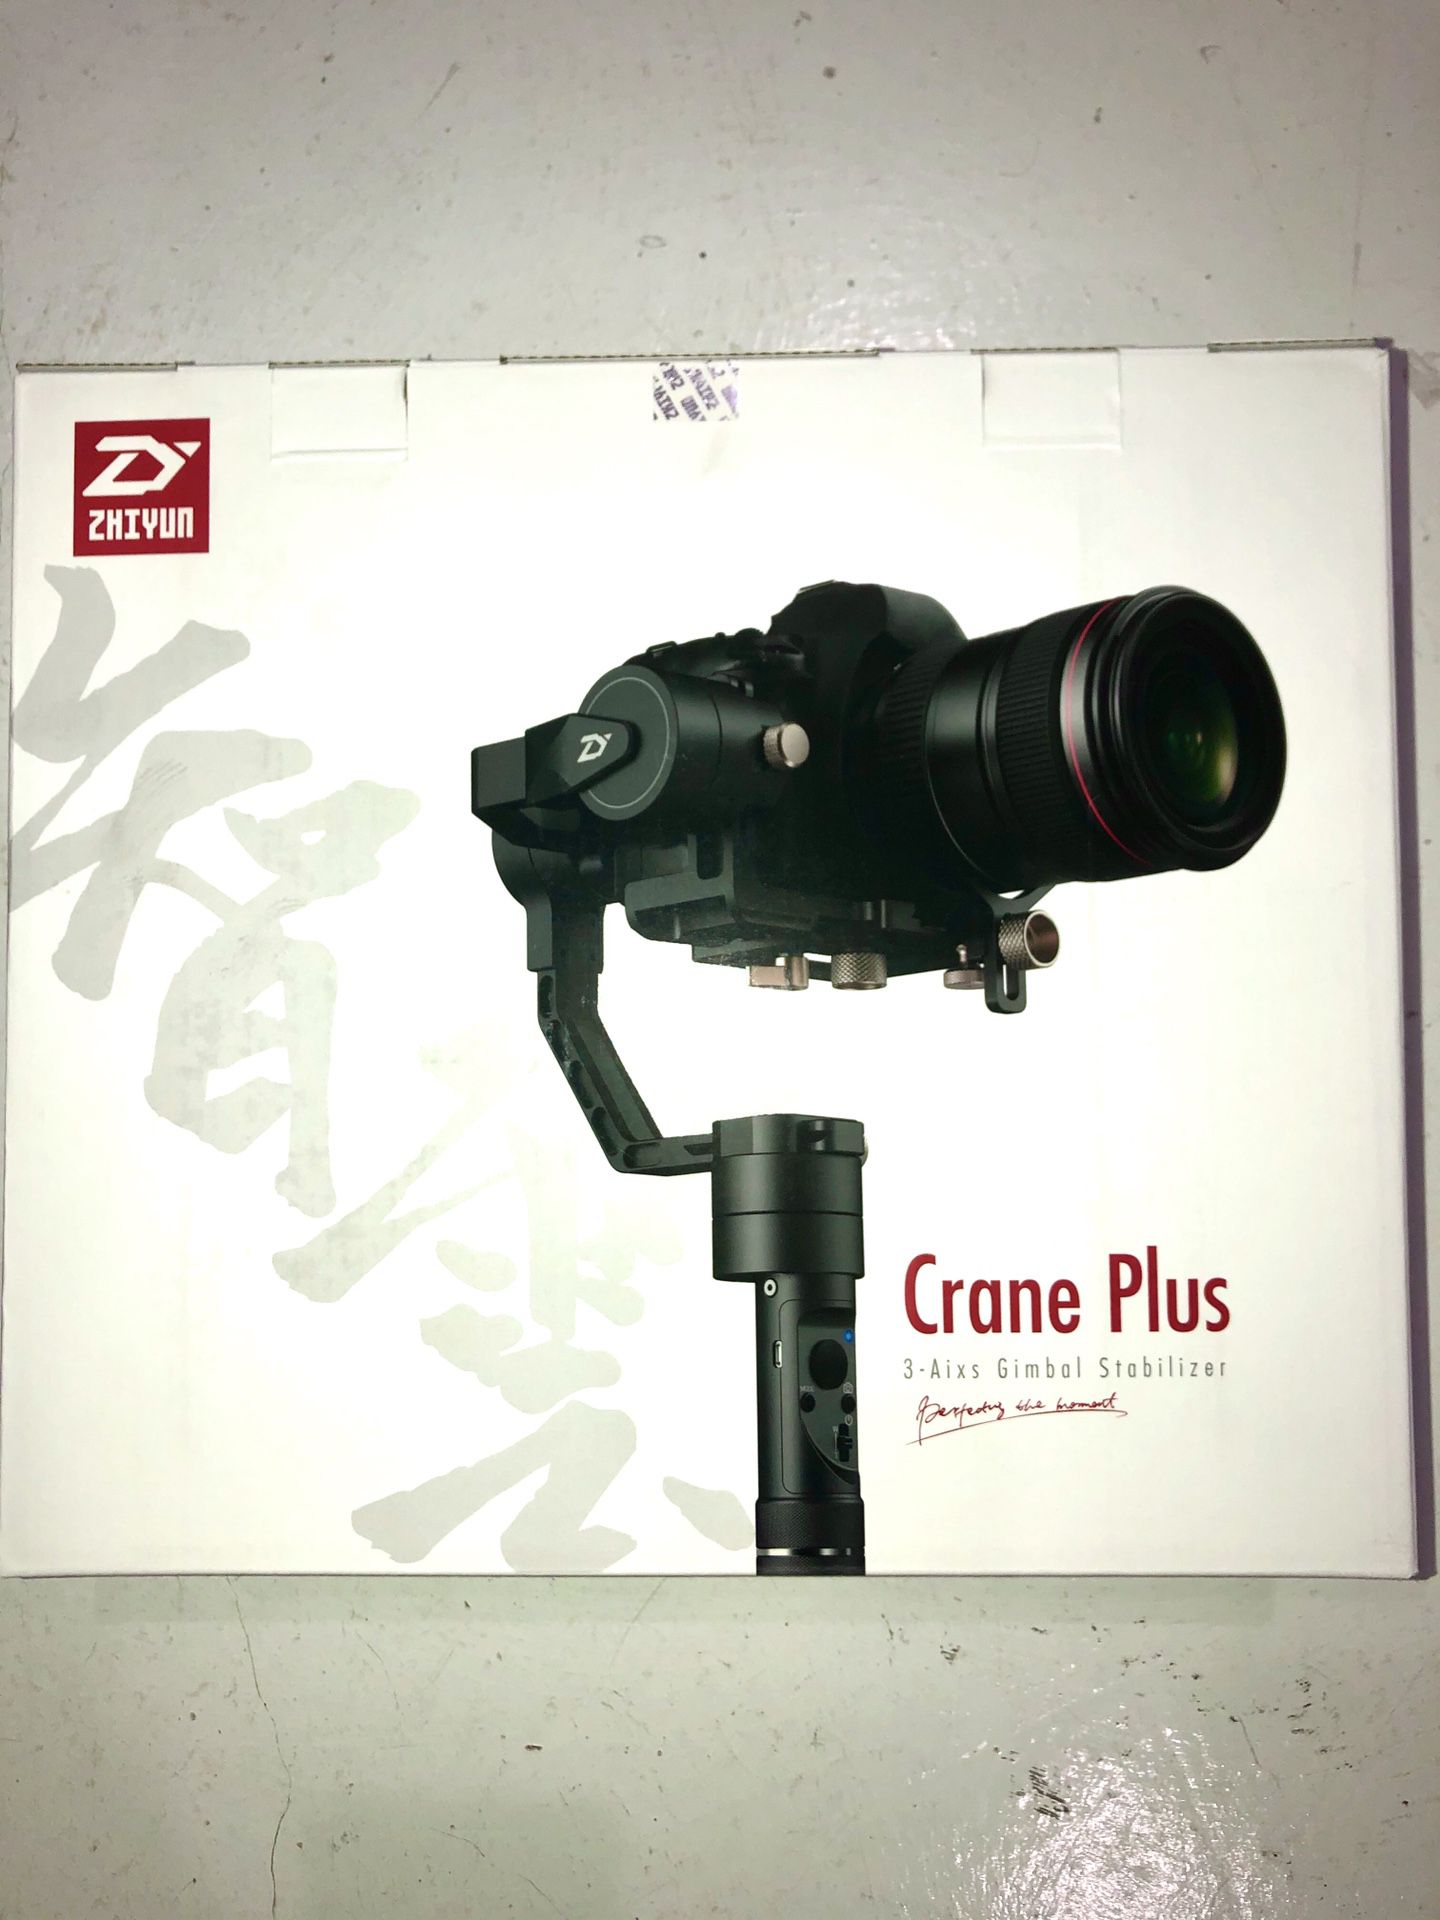 NEVER USED: Zhiyun Crane Plus 3-Axis Gimbal